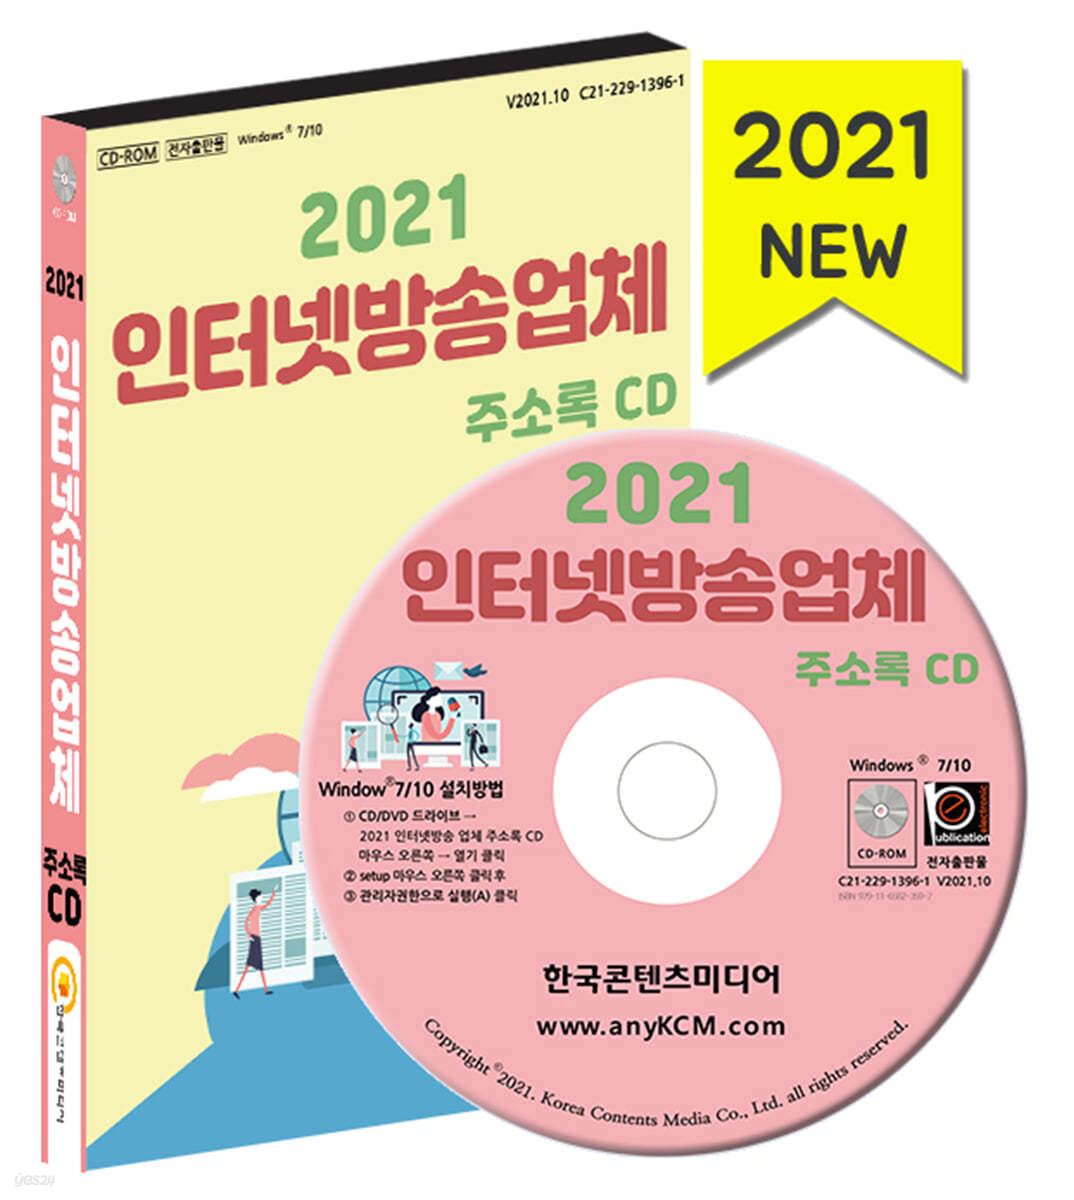 2021 인터넷방송업체 주소록 CD